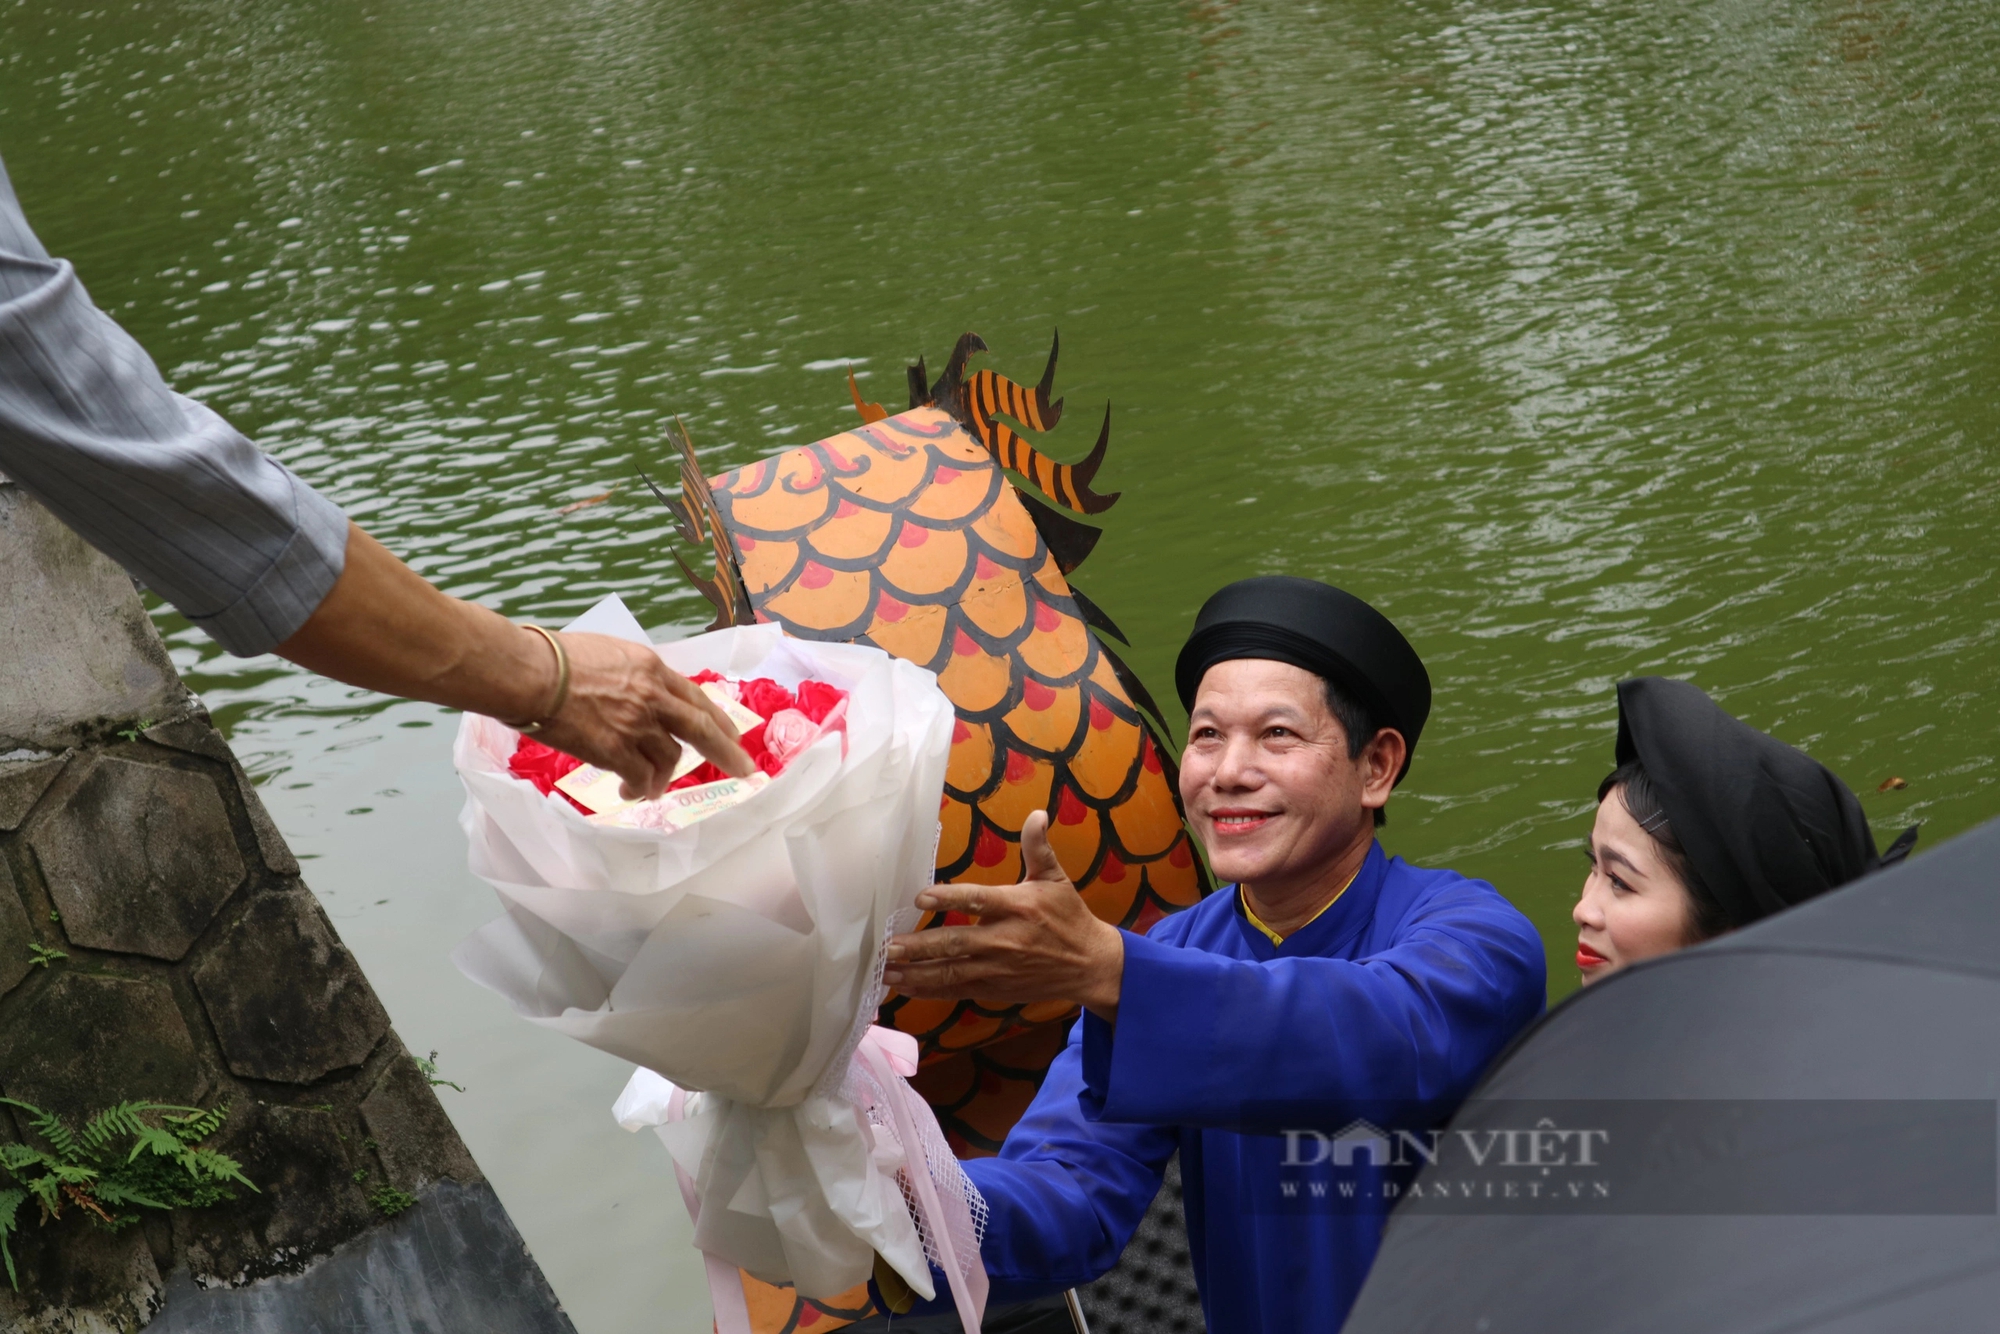 Hội Lim: Cảnh nhận tiền thưởng "mới lạ" khi hát Quan họ trên thuyền - Ảnh 3.